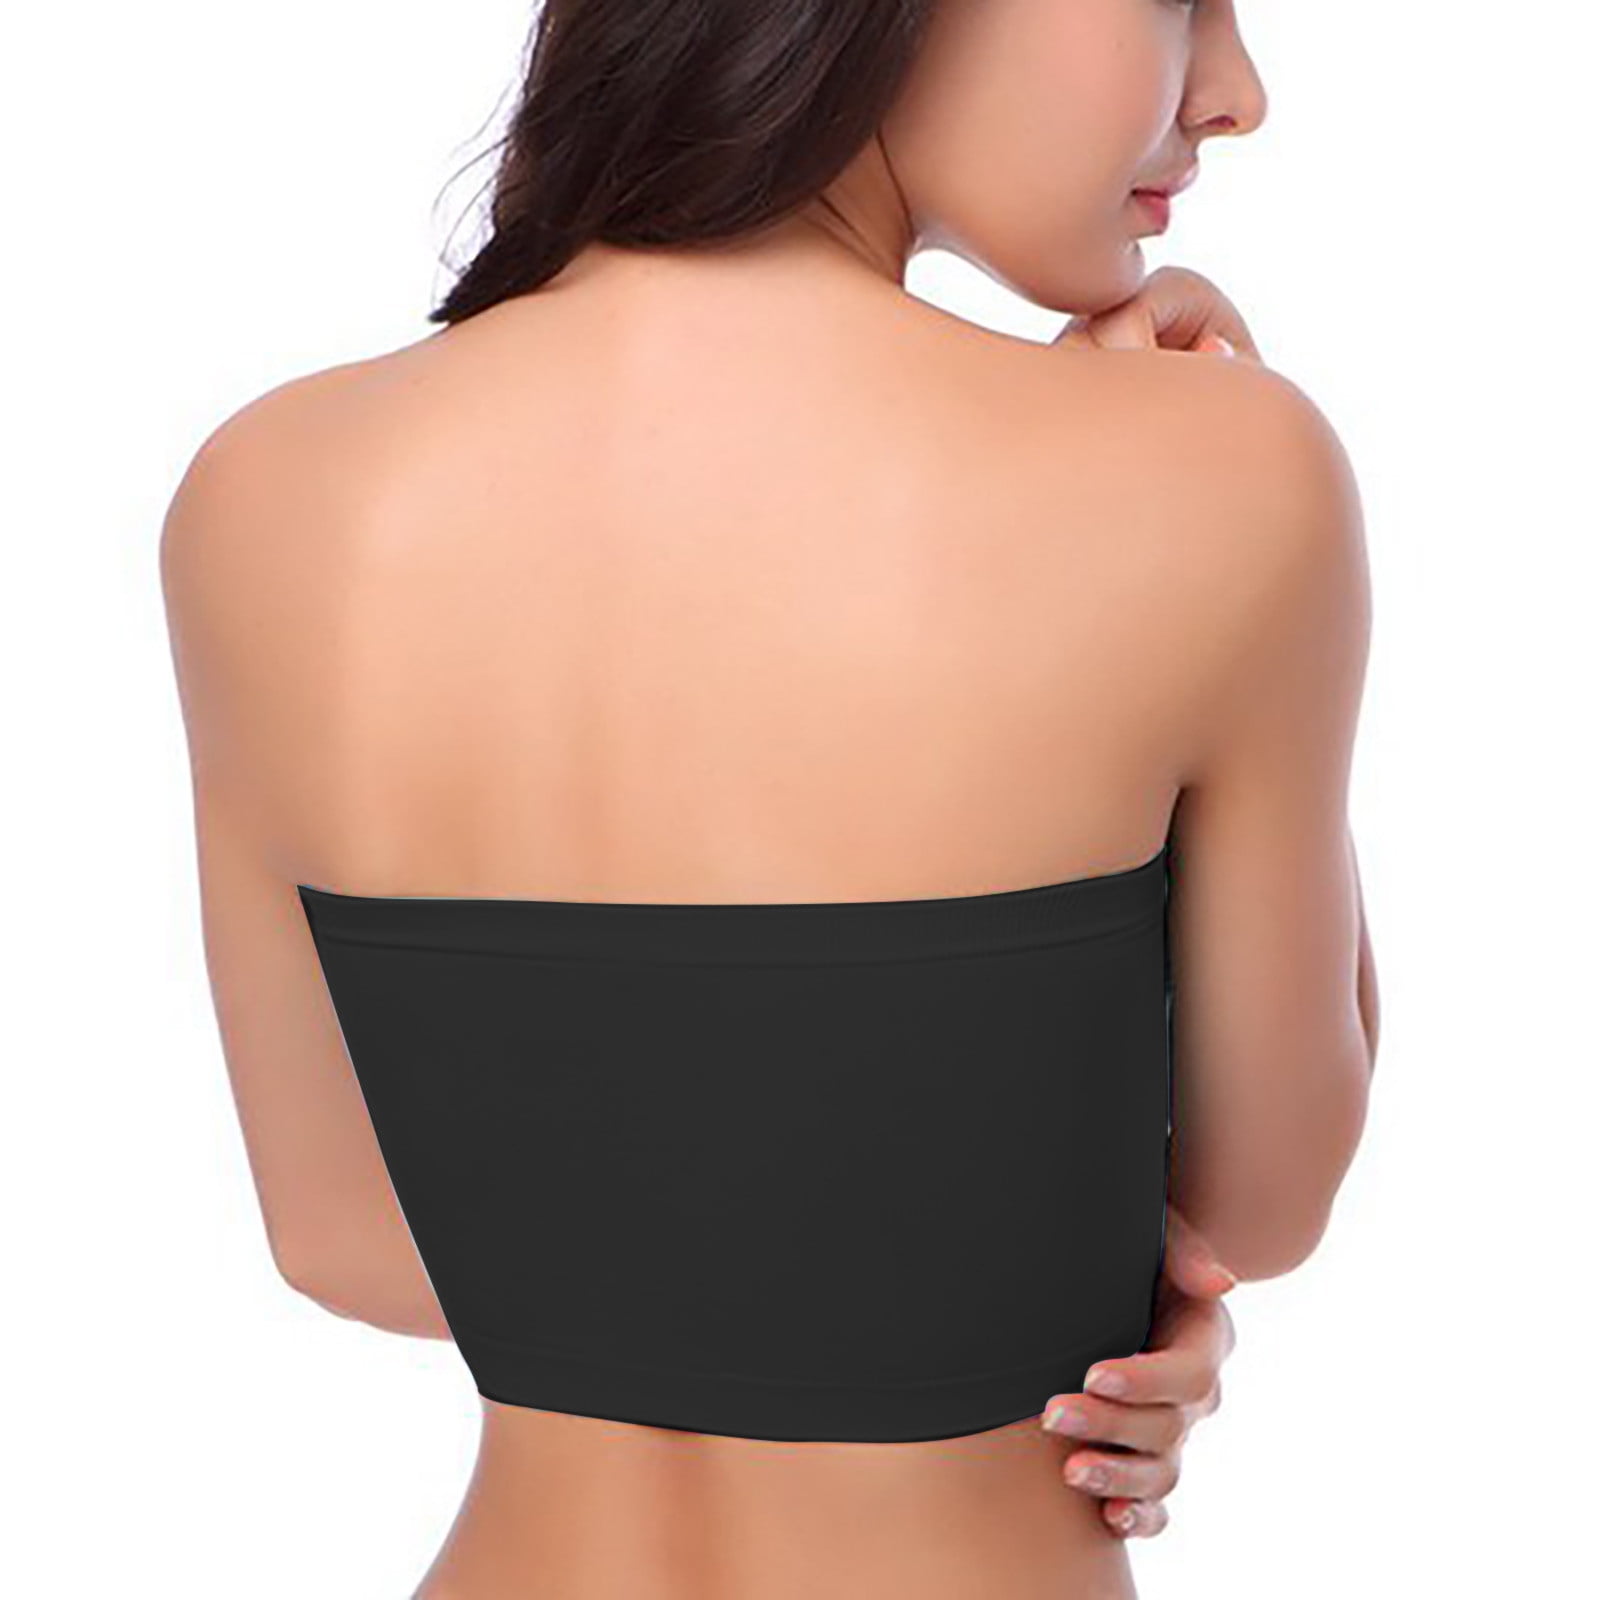 MELENECA Women's Strapless Bra for Large Bust Back Smoothing Plus